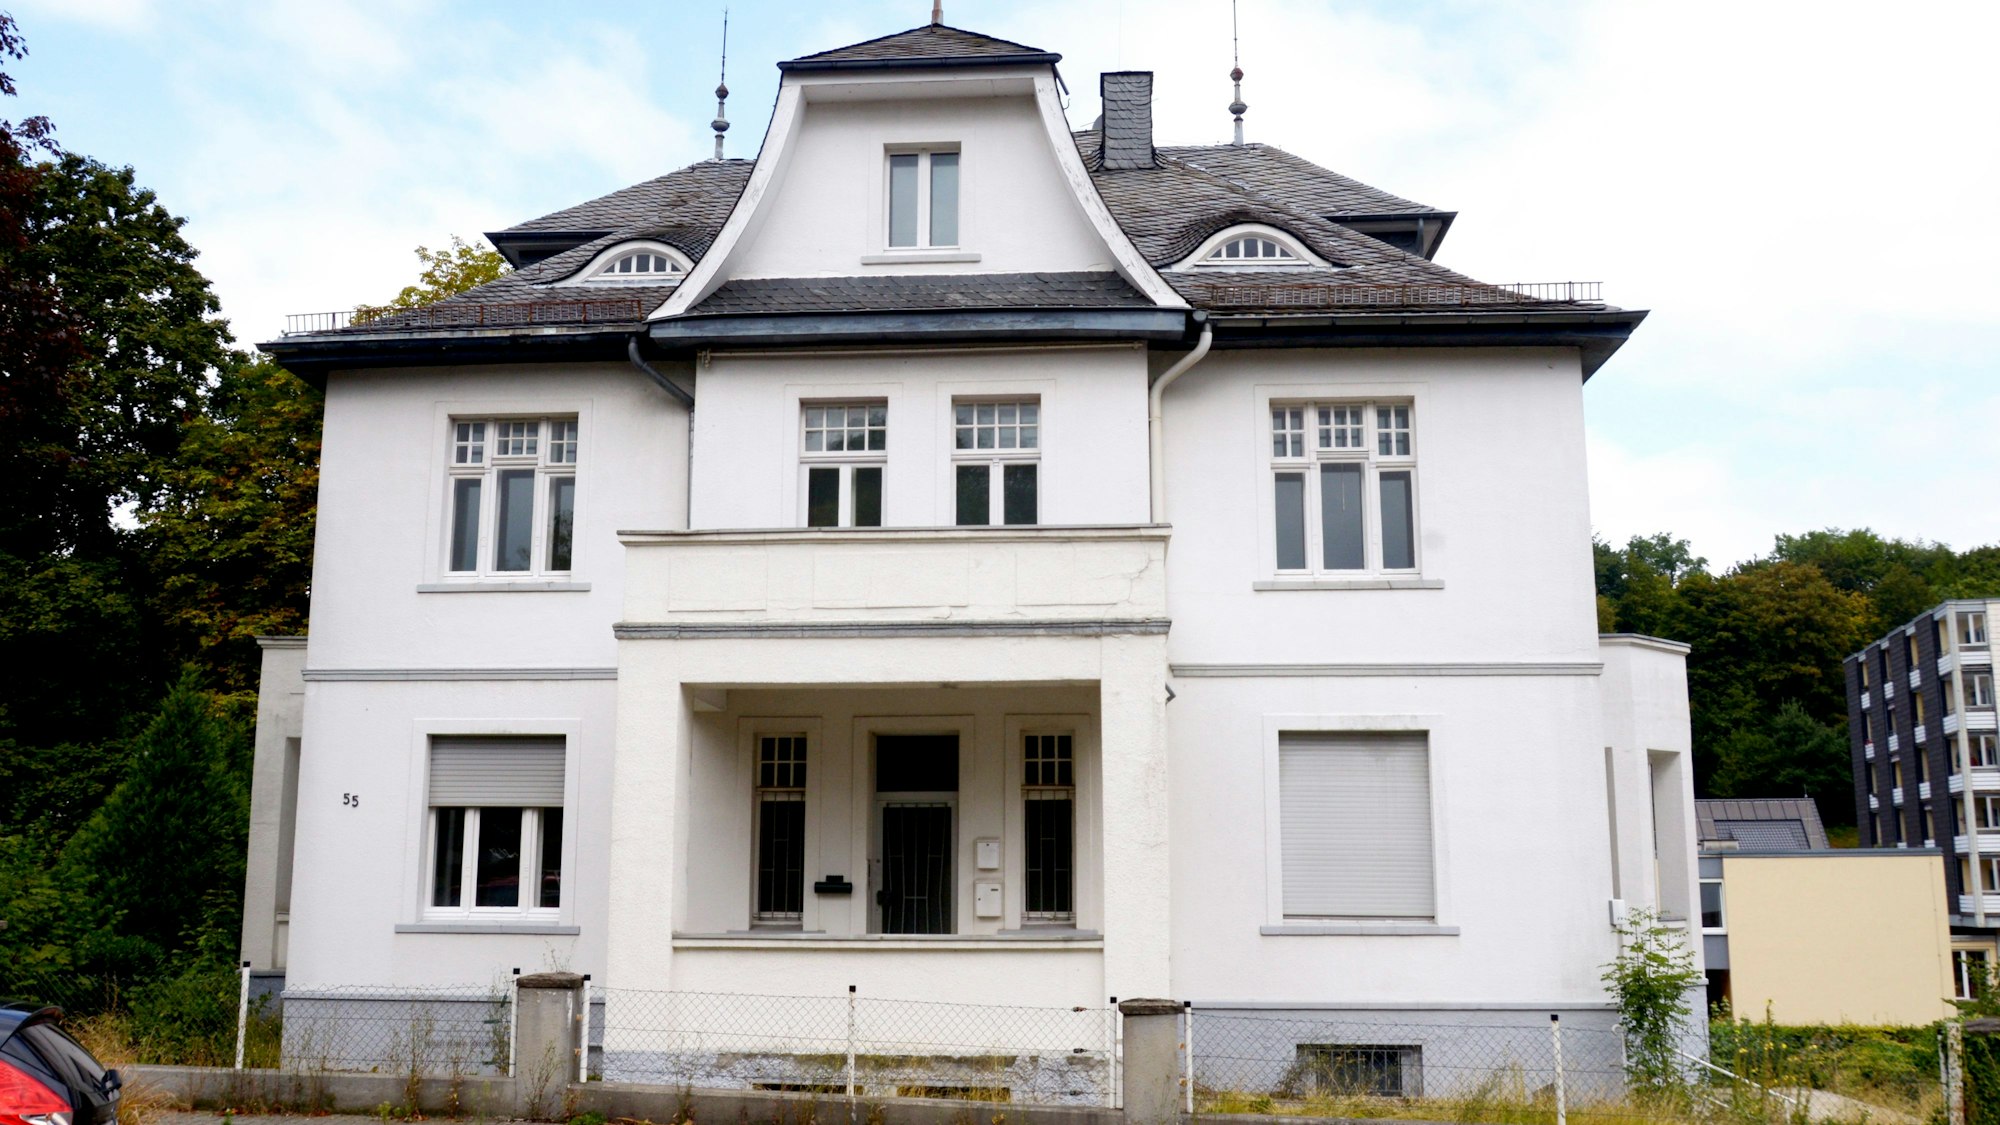 Es ist die Villa Sander in Wipperfürth zu sehen.